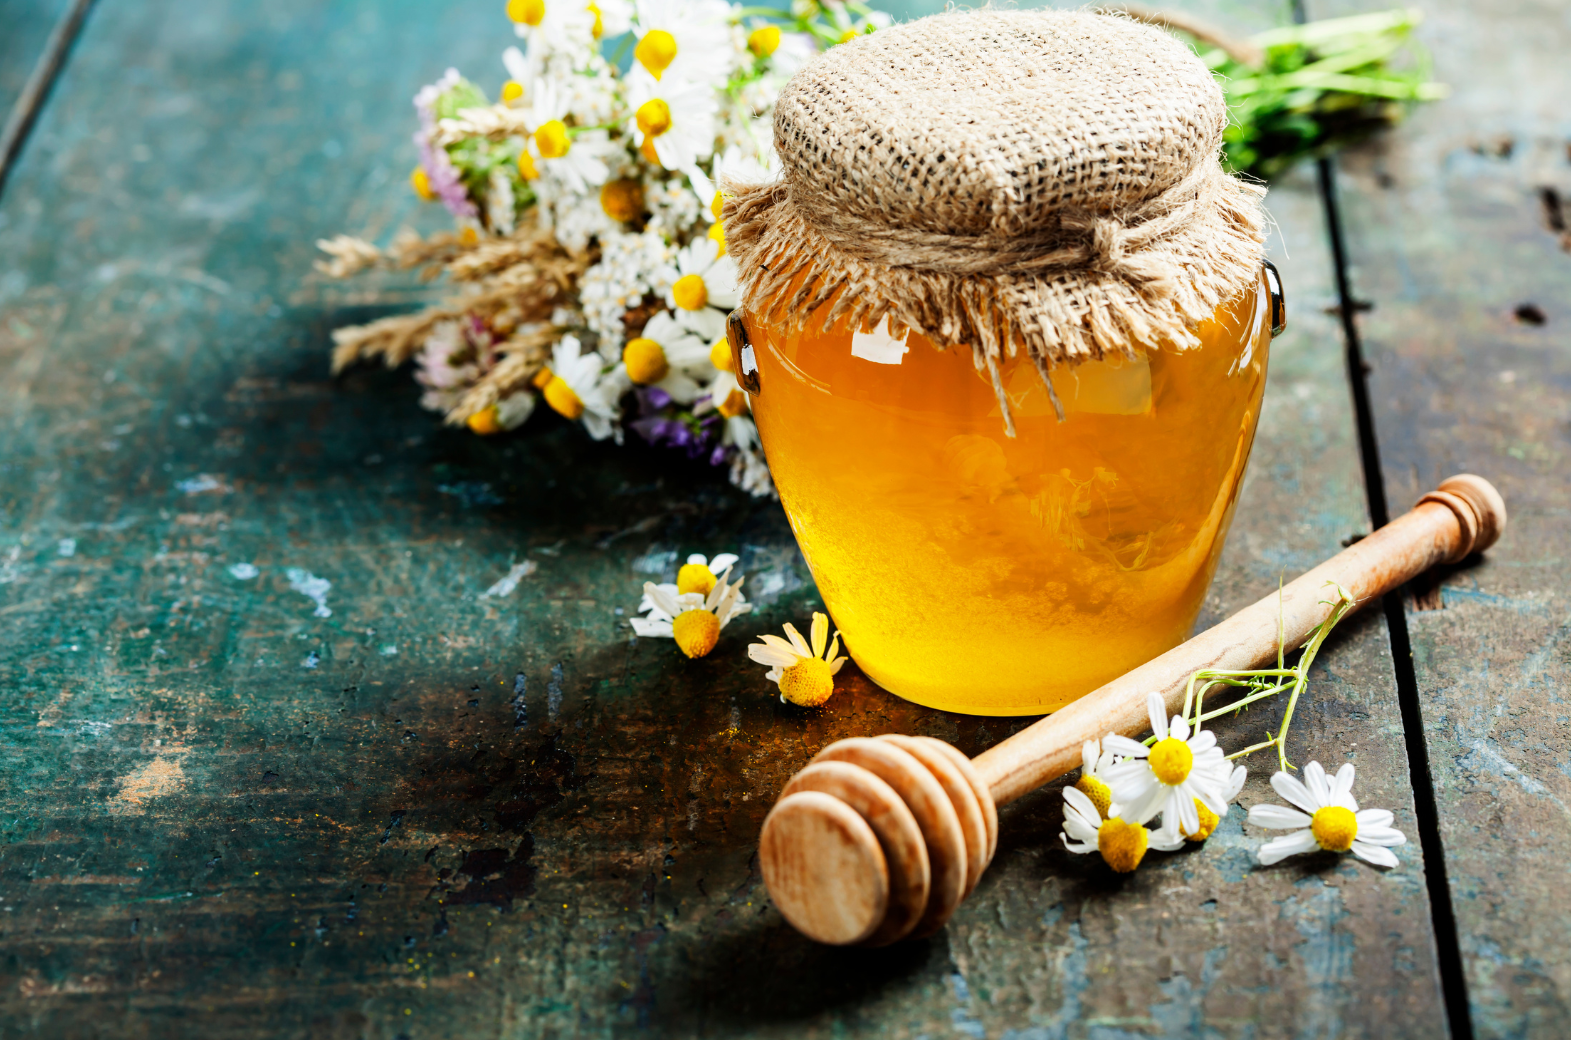 Honning fra vores egen bigaard er en unik og eftertragtet delikatesse, der er kendt for sin smag og kvalitet. Produceret af vores egne bier i naturen i og omkring Billund. Honning fra vores egen bigaard er også kendt for sin særlige smag, duft og farve. Honning er en sund, og naturligt sødemiddel, der kan variere afhængigt af de blomster, som bierne har samlet nektar fra.